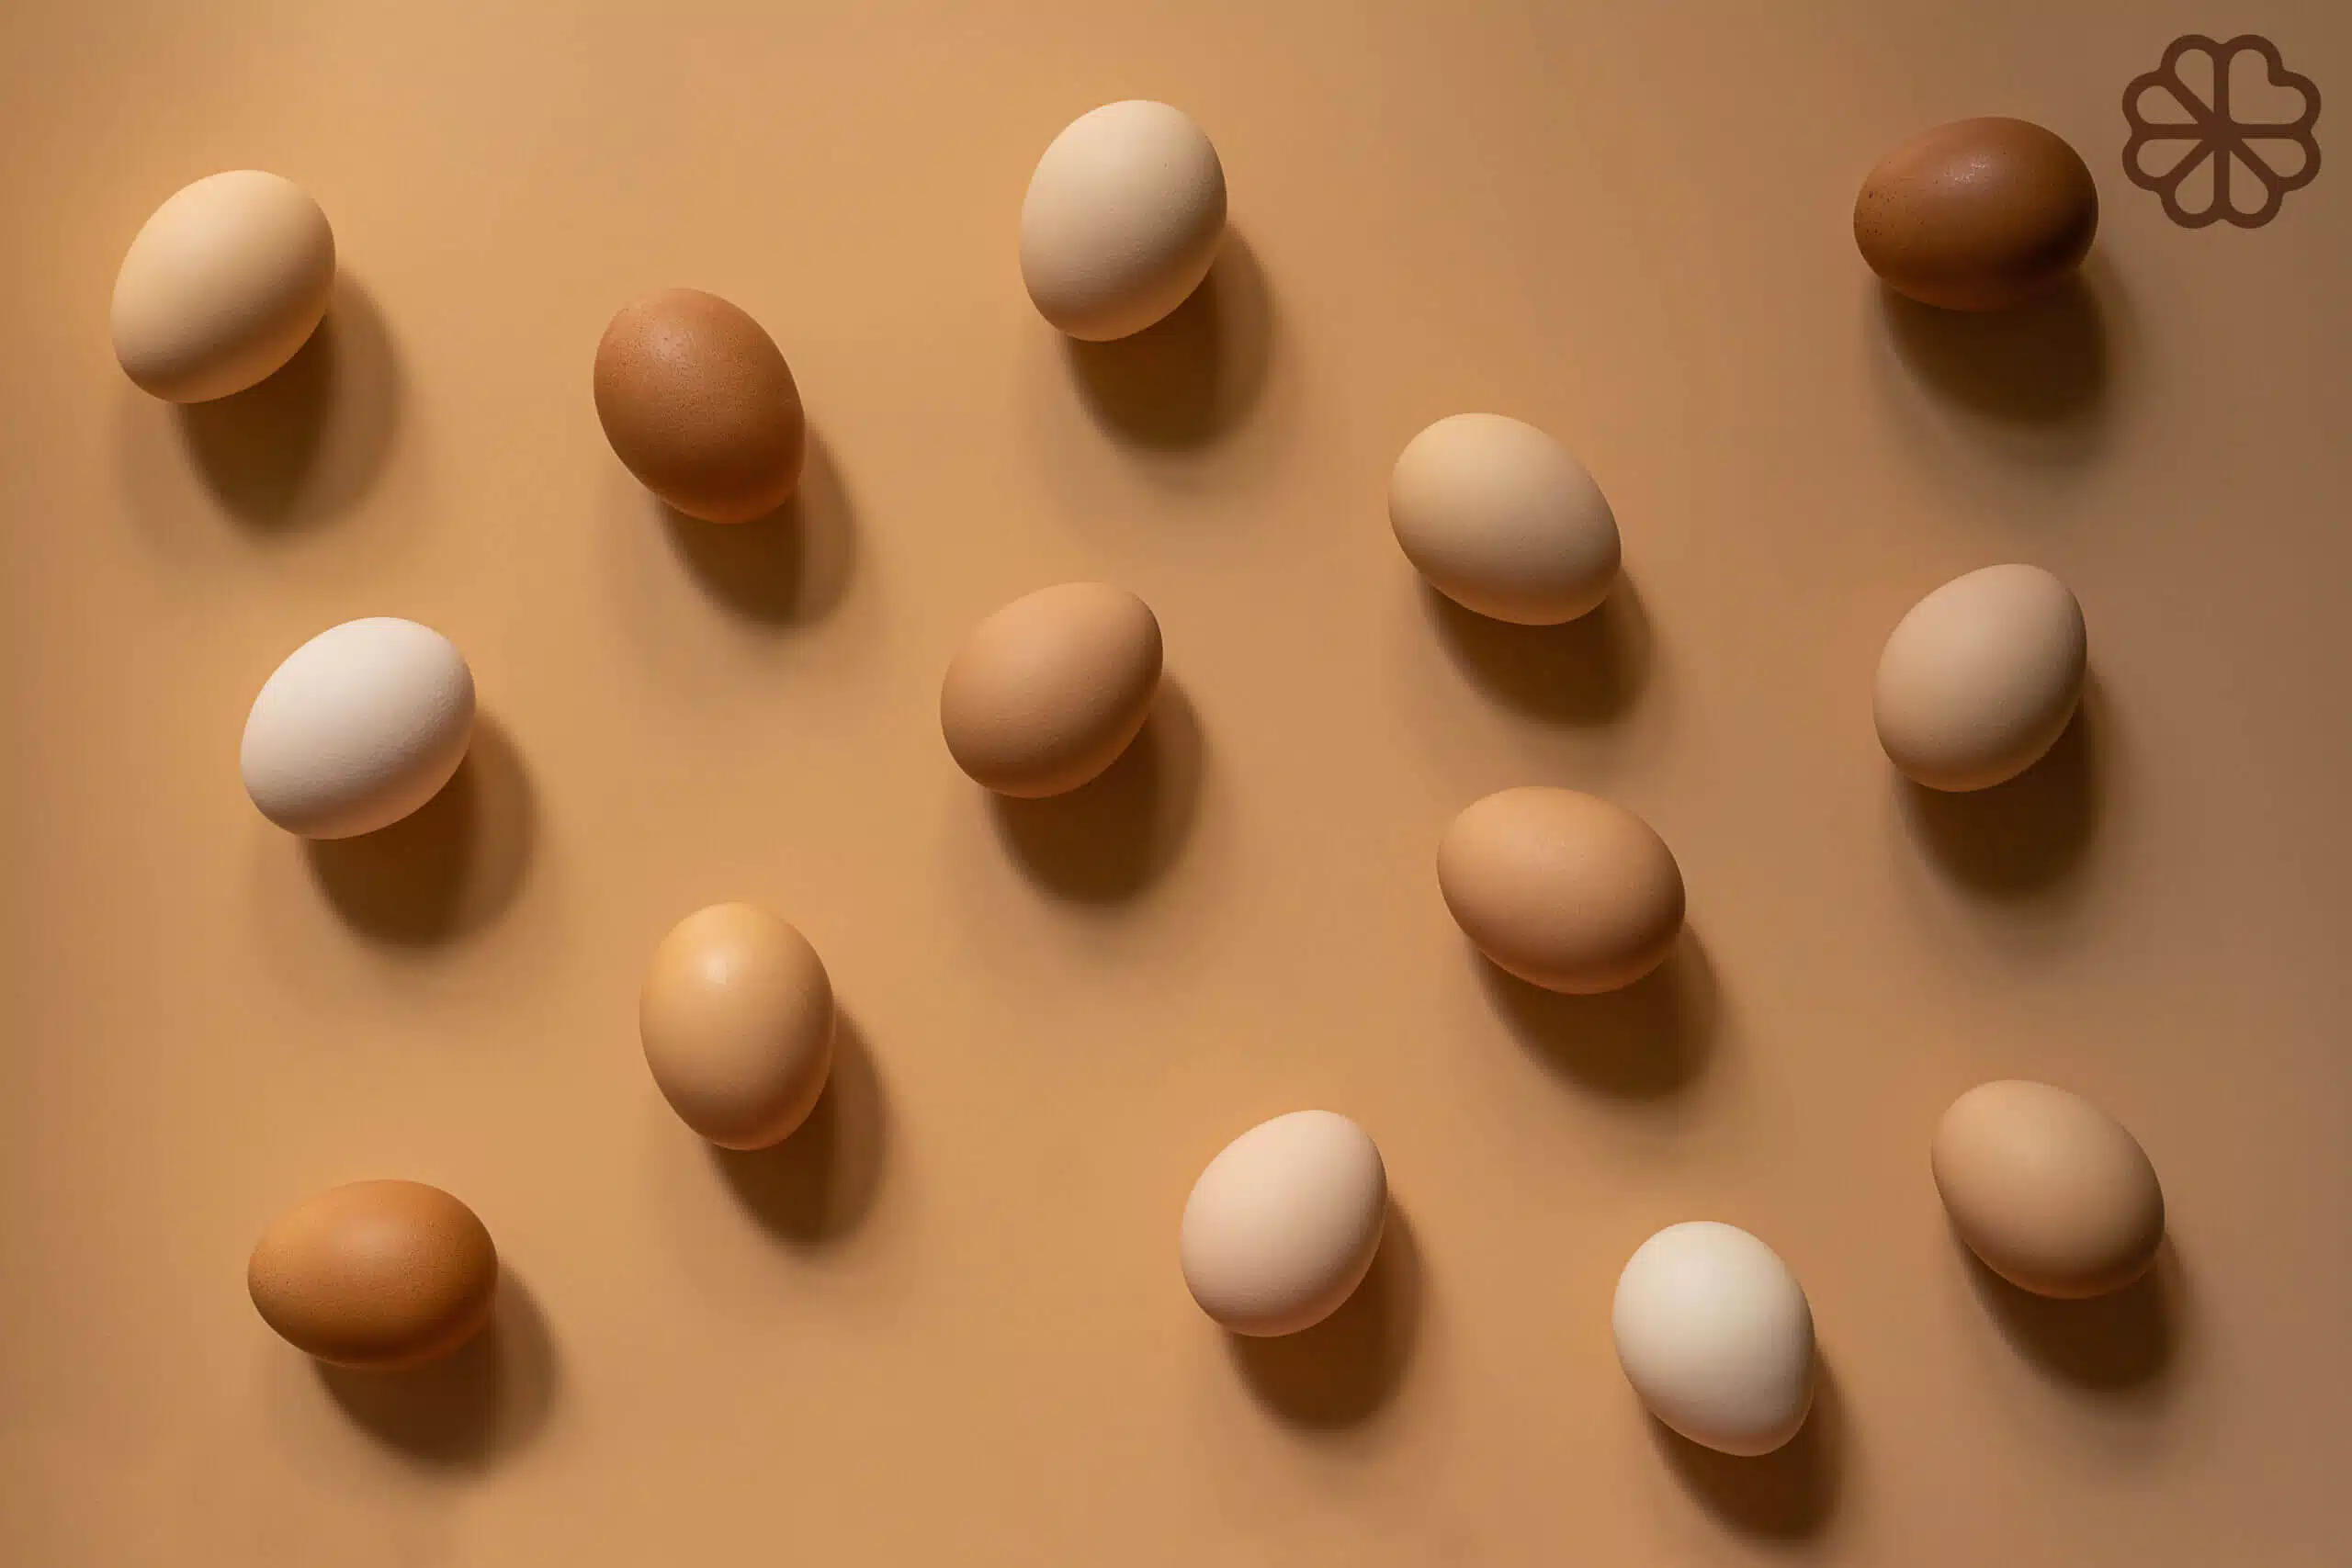 Geleneksel Tıpta Yumurtanın Önemi